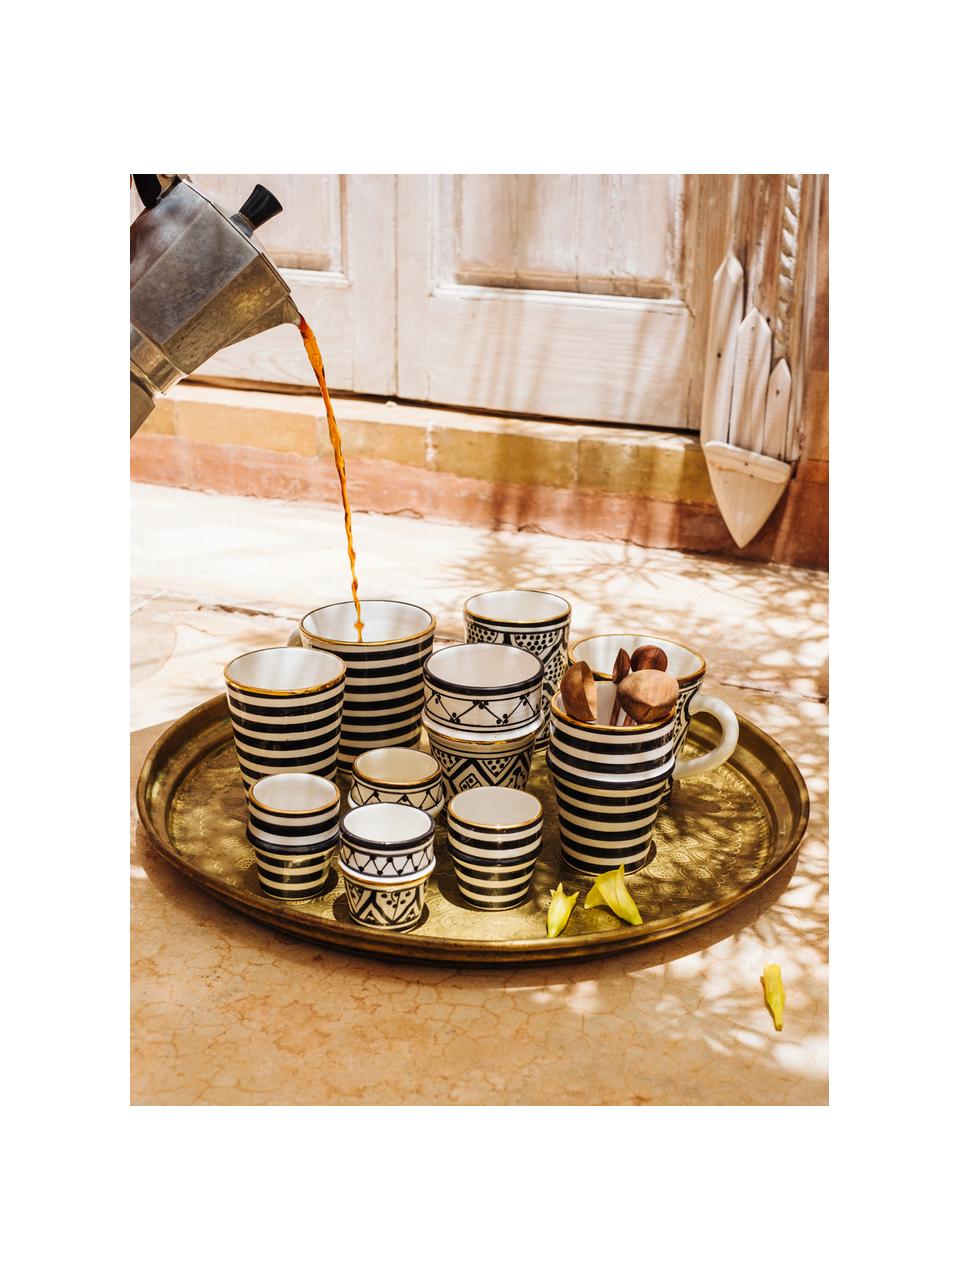 Ručne vyrobený hrnček v marockom štýle Beldi, Keramika, Čierna, krémová, zlatá, Ø 8 x V 11 cm, 300 ml